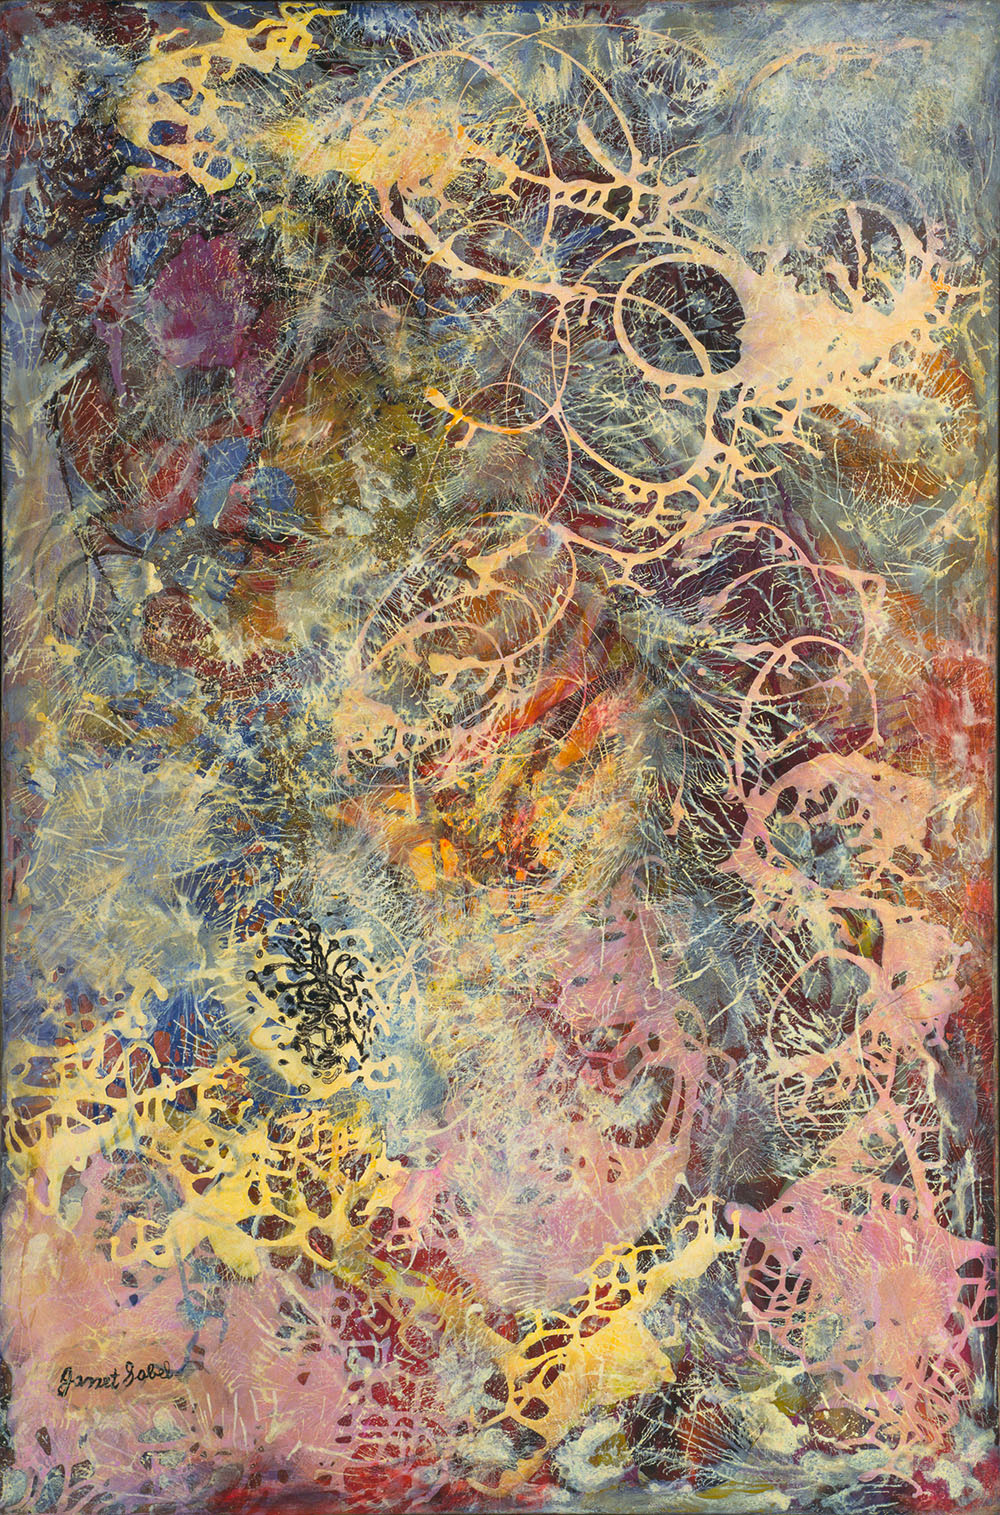 JANET SOBEL_Milky Way, 1945_Enamel on canvas_EX2024.JS.1_1000 W